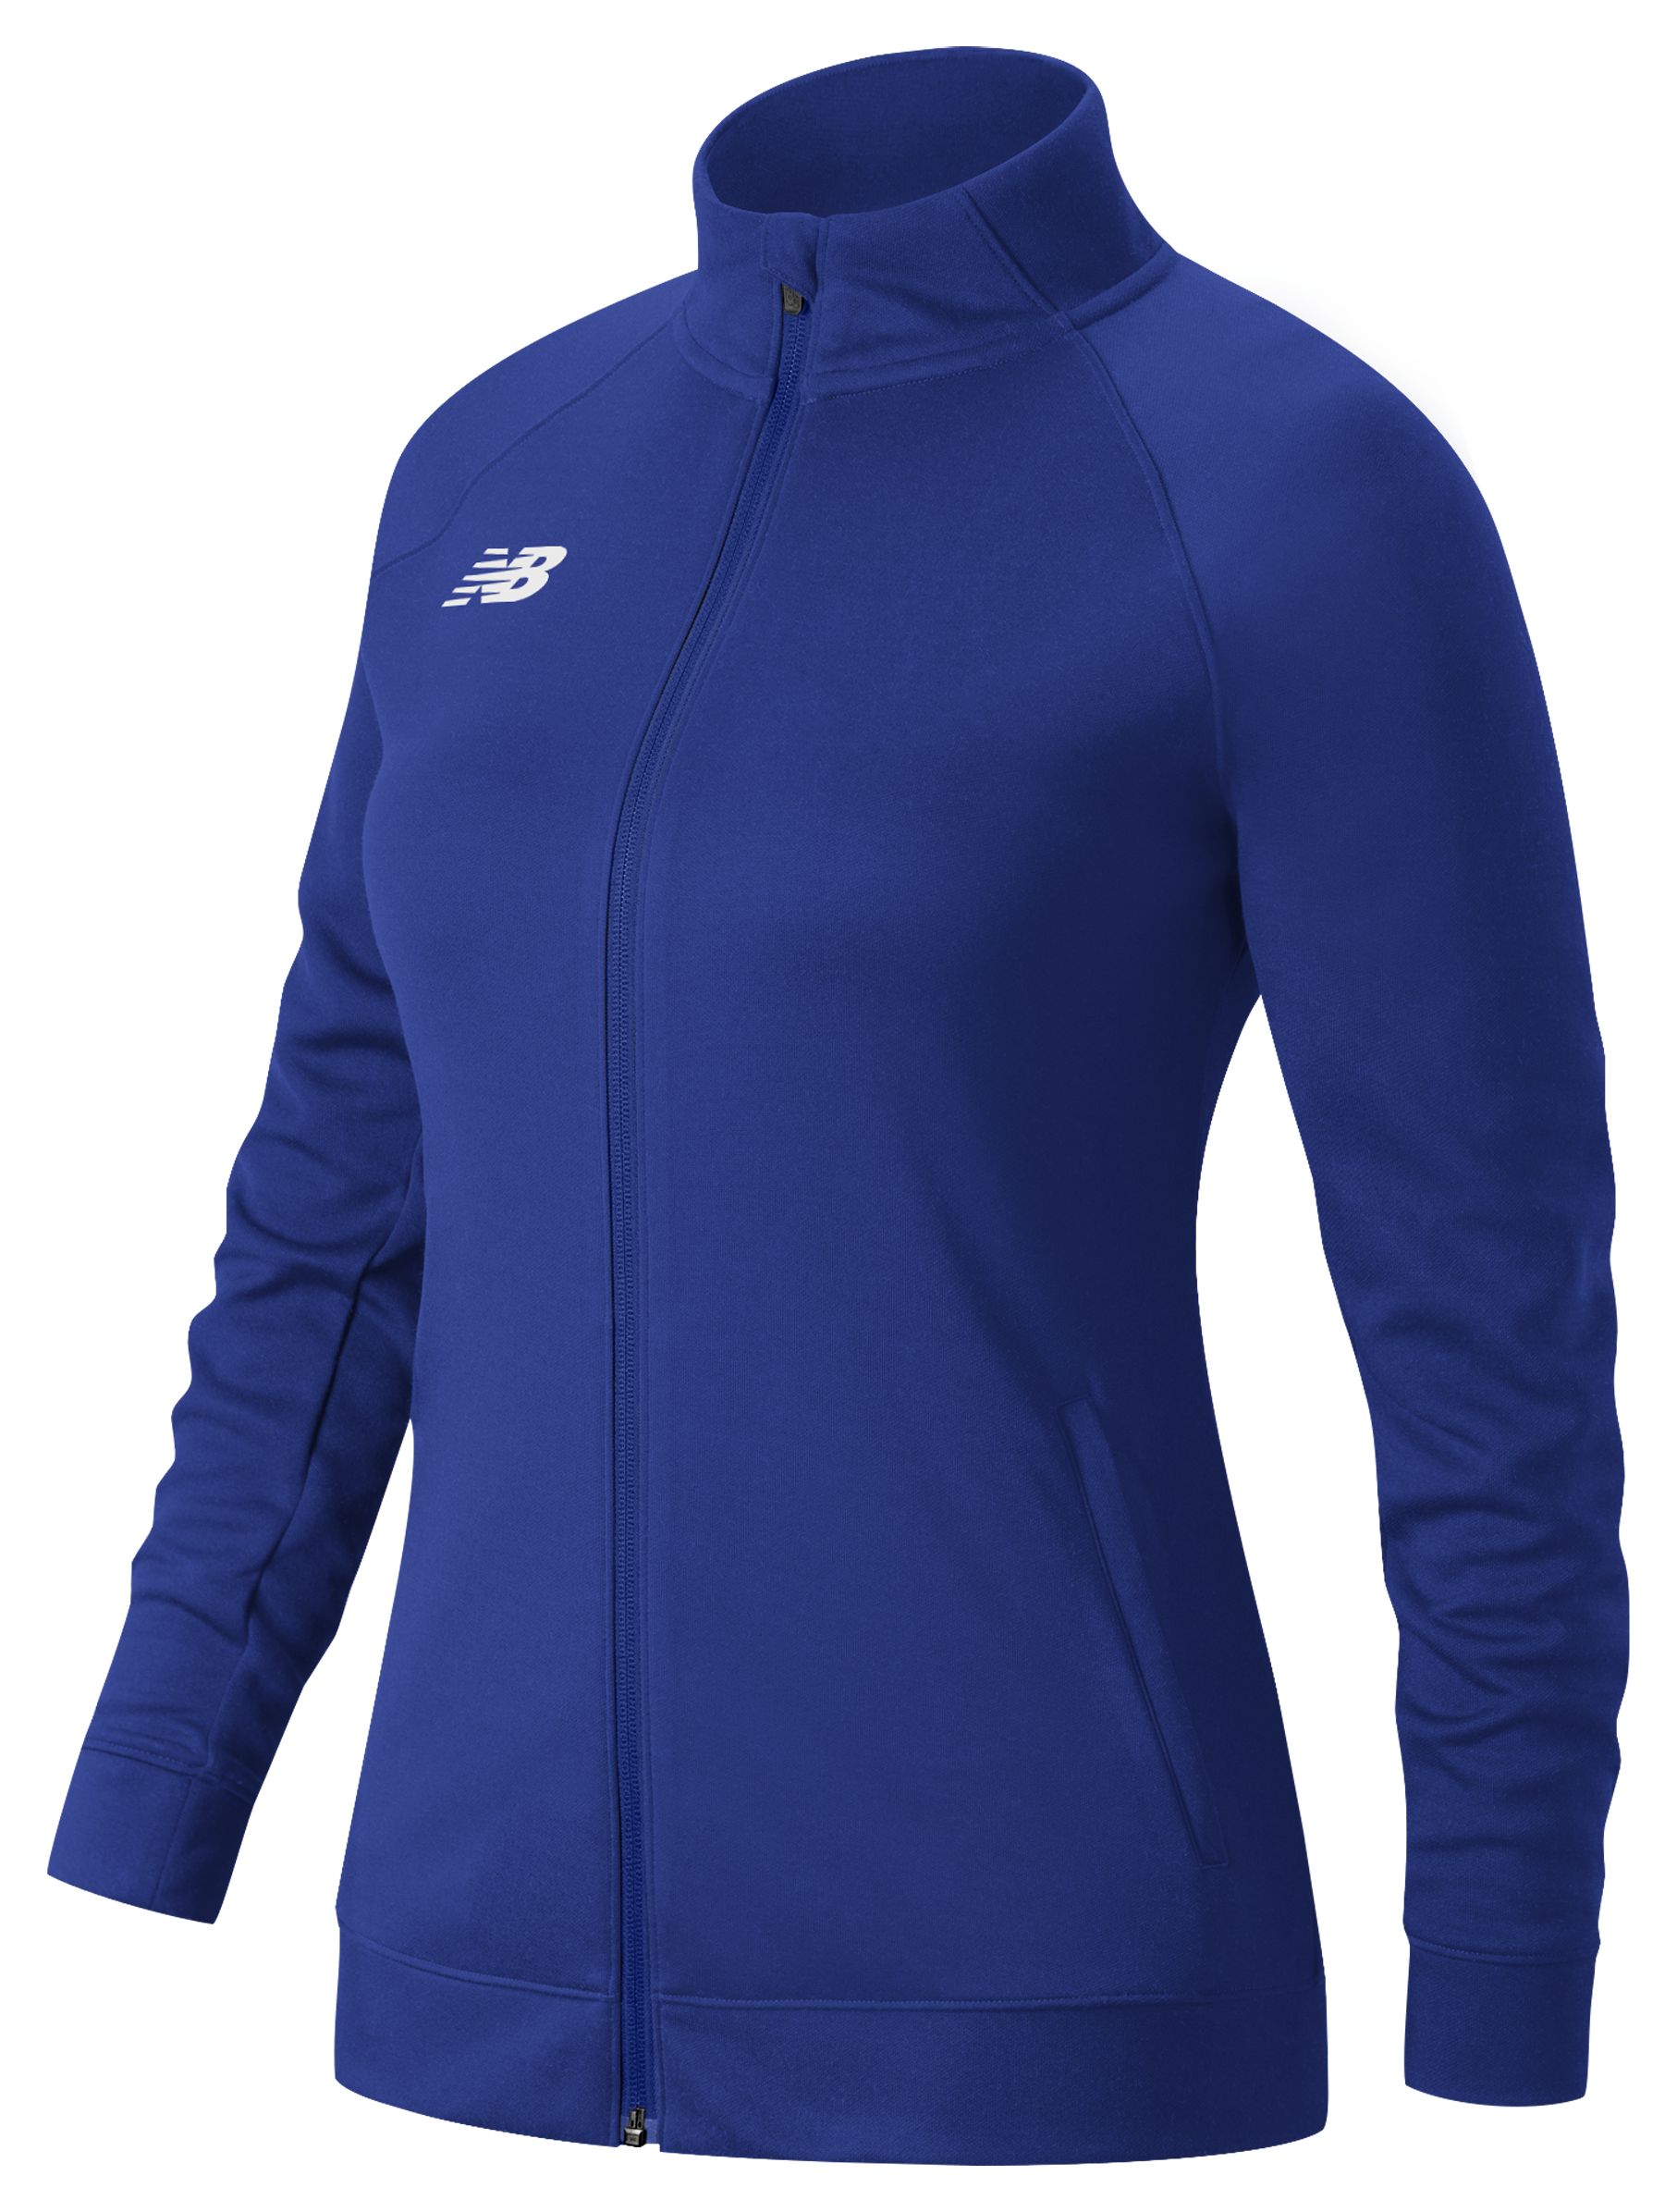 Women's Sports Jacket - Workout Jackets - New Balance